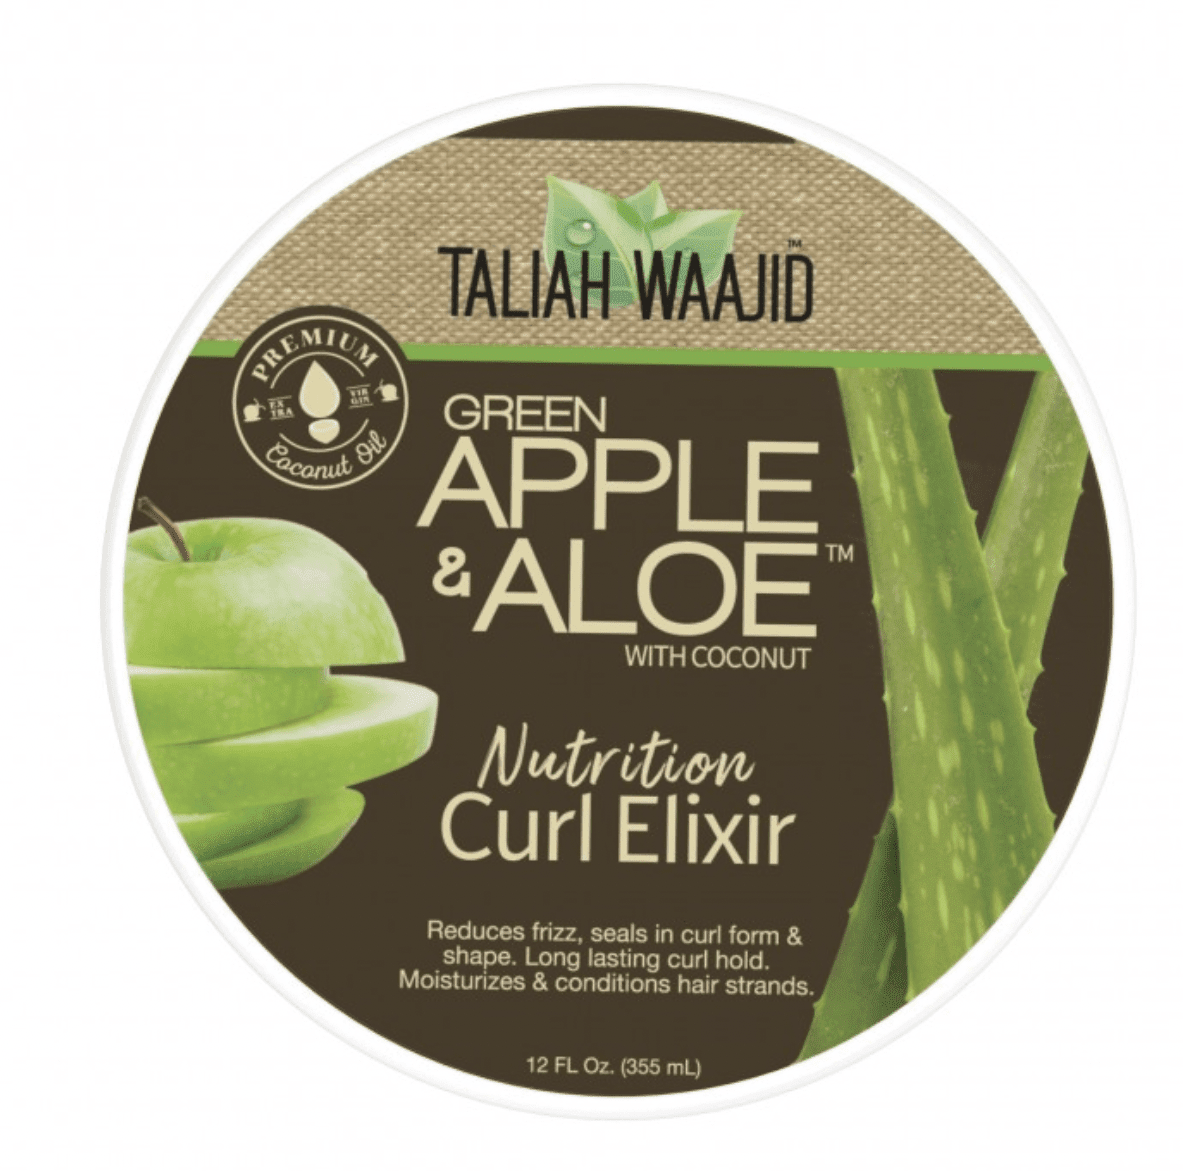 Taliah Waajid - Nutrition cream for curls "curl elixir" - 355ml - Taliah Waajid - Ethni Beauty Market